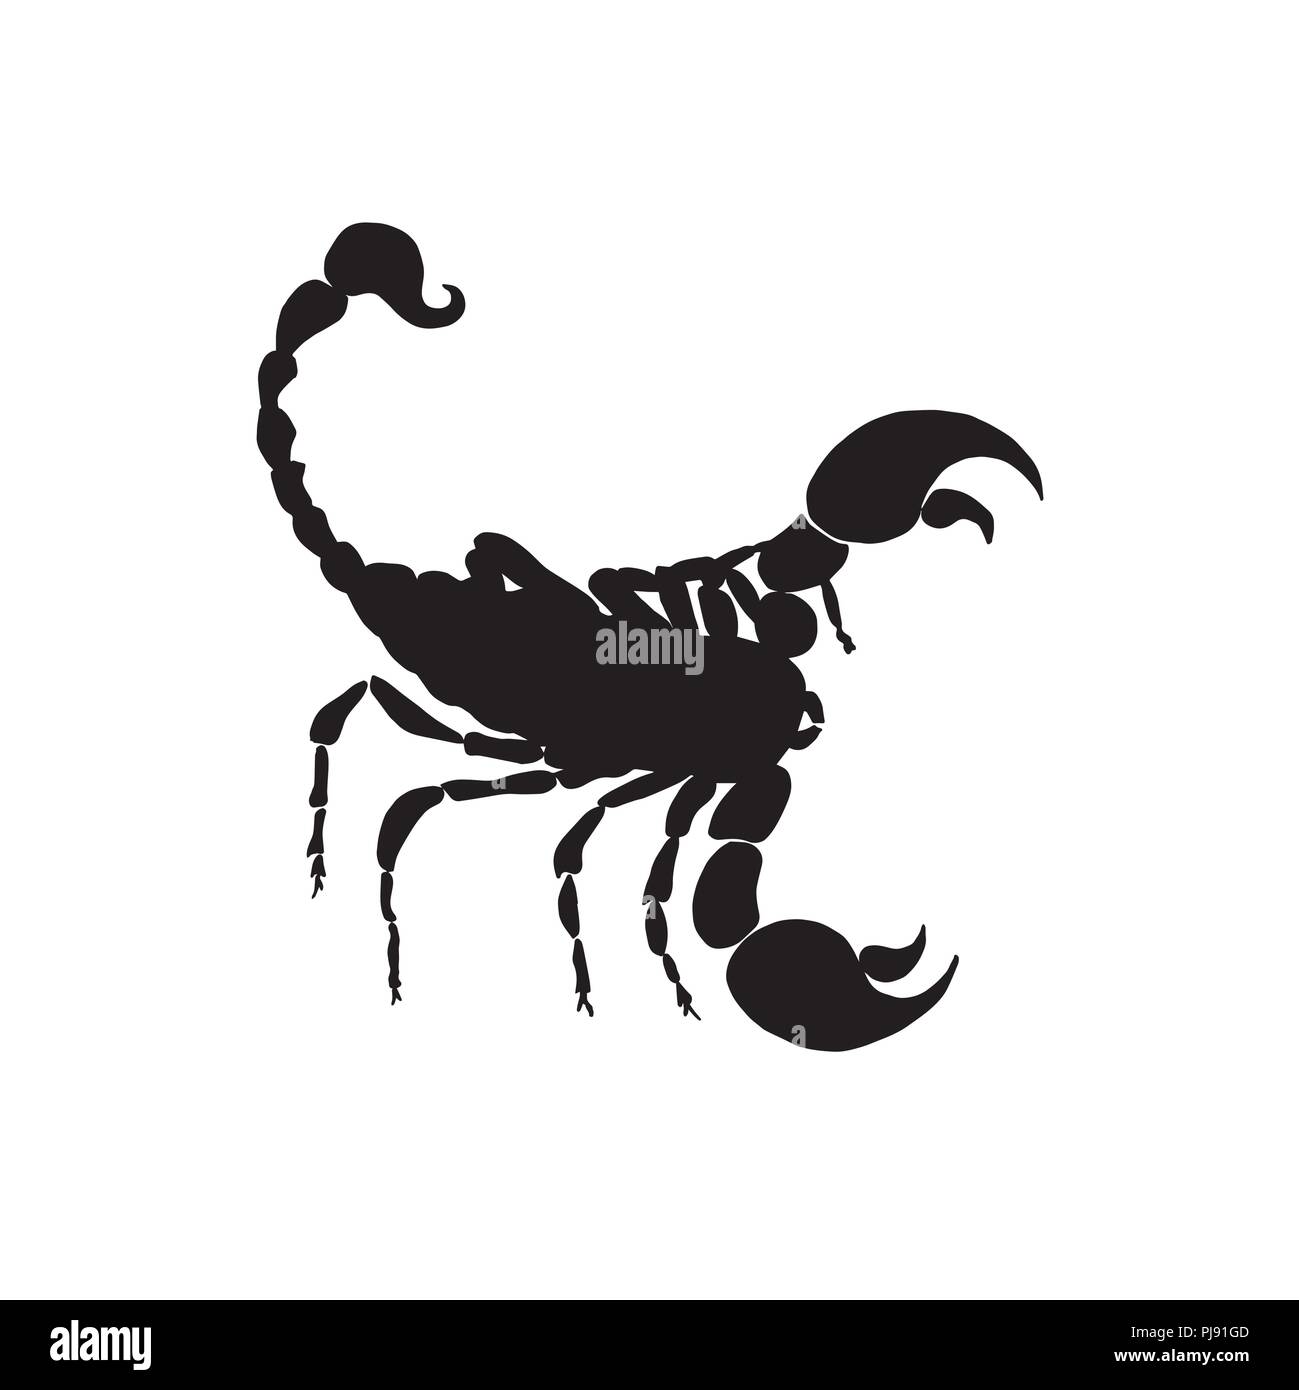 Vector scorpio black silhouette. Scorpio zodiac sign silhouette. Stock Vector